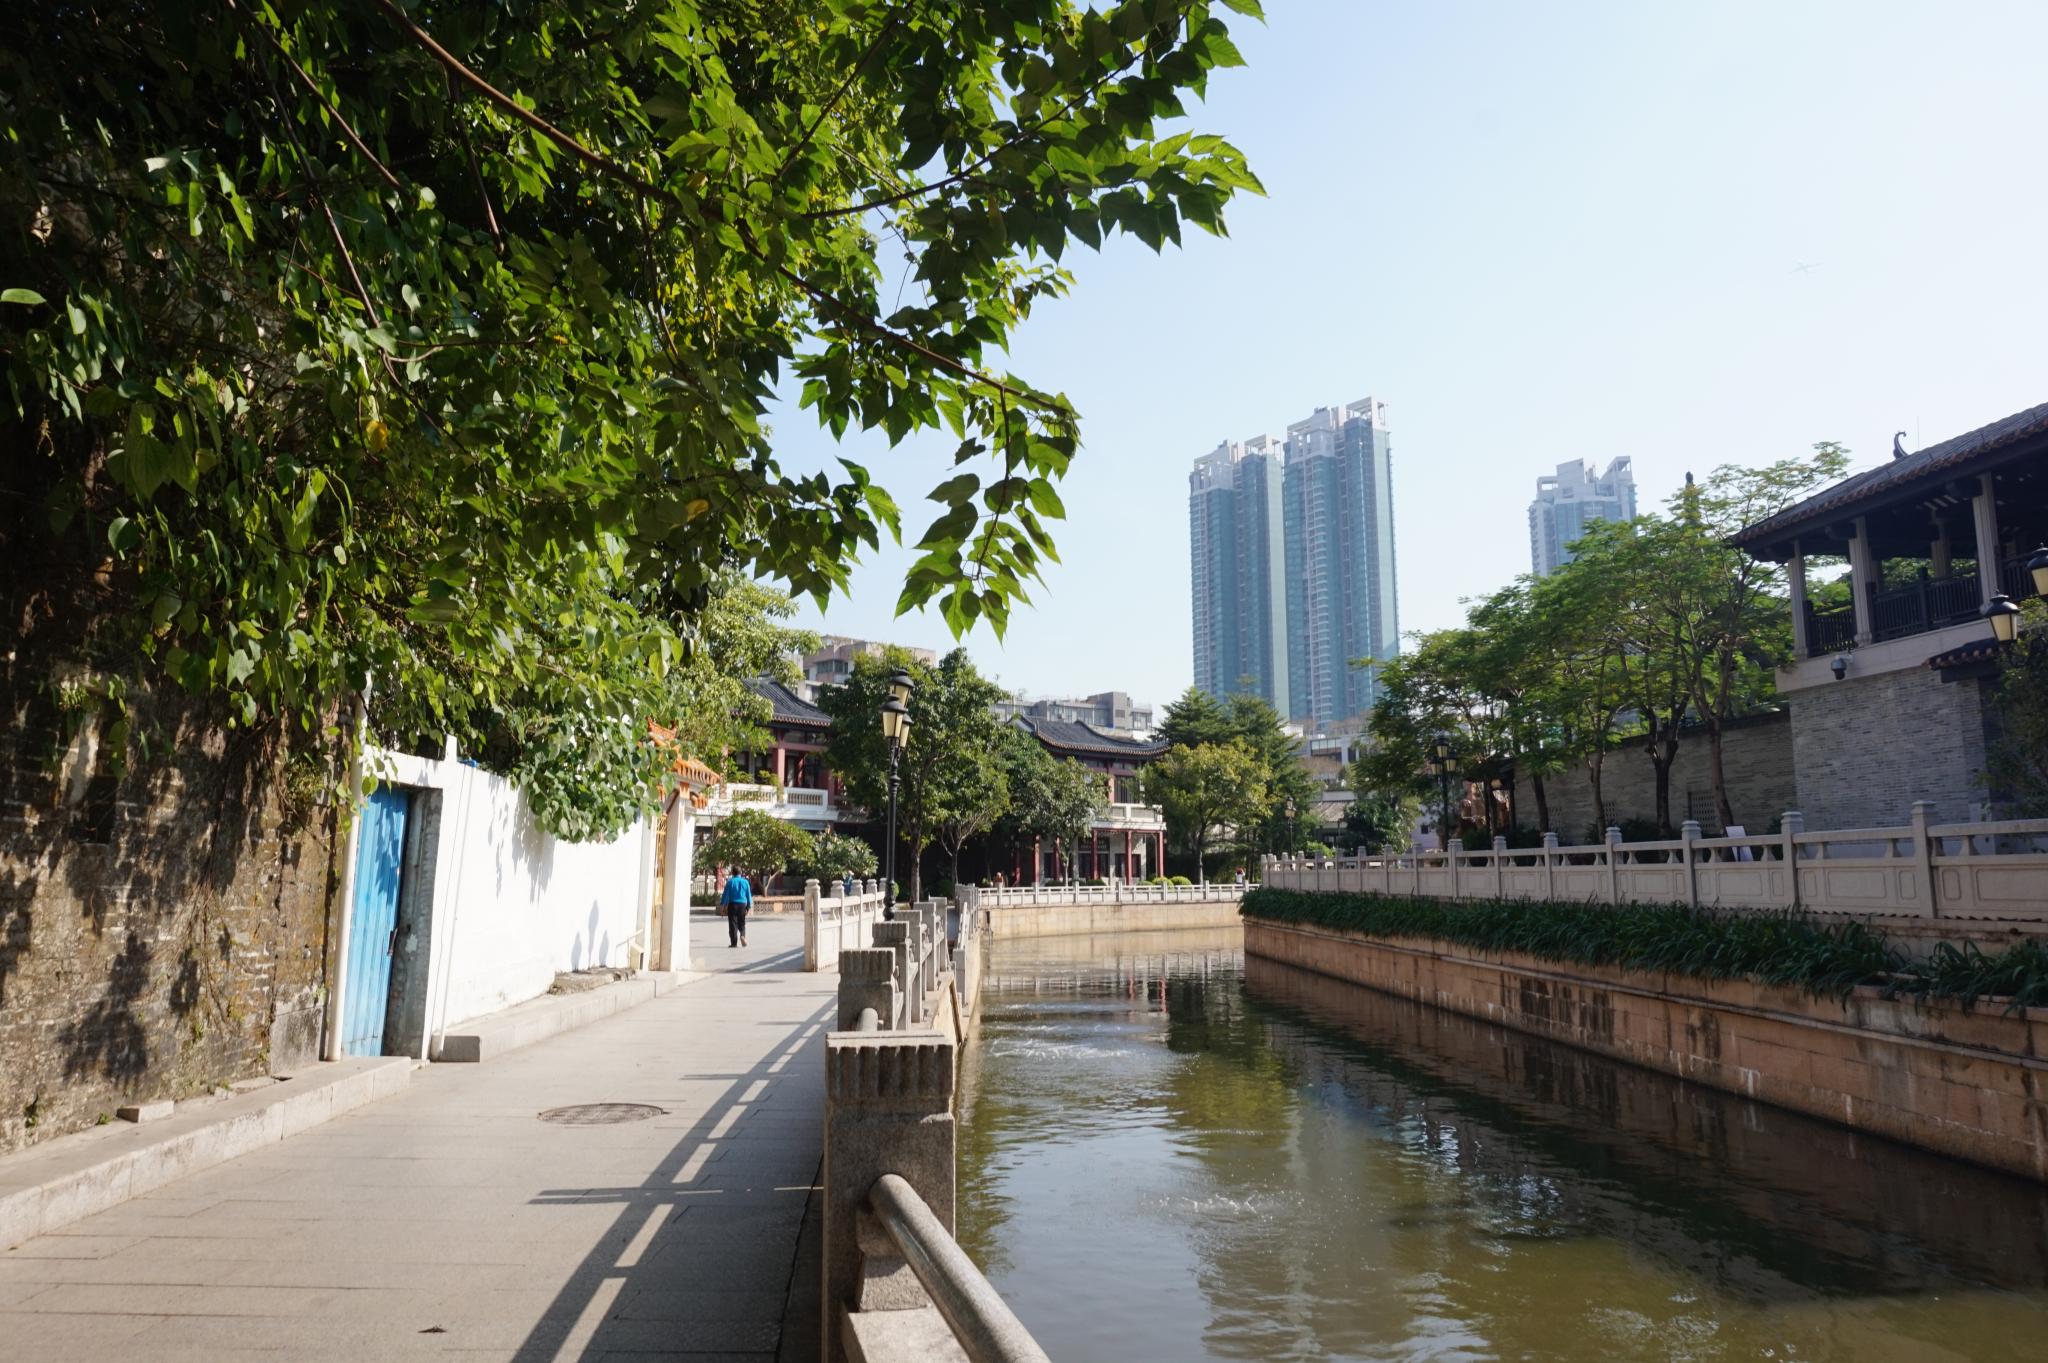 Daguan canal